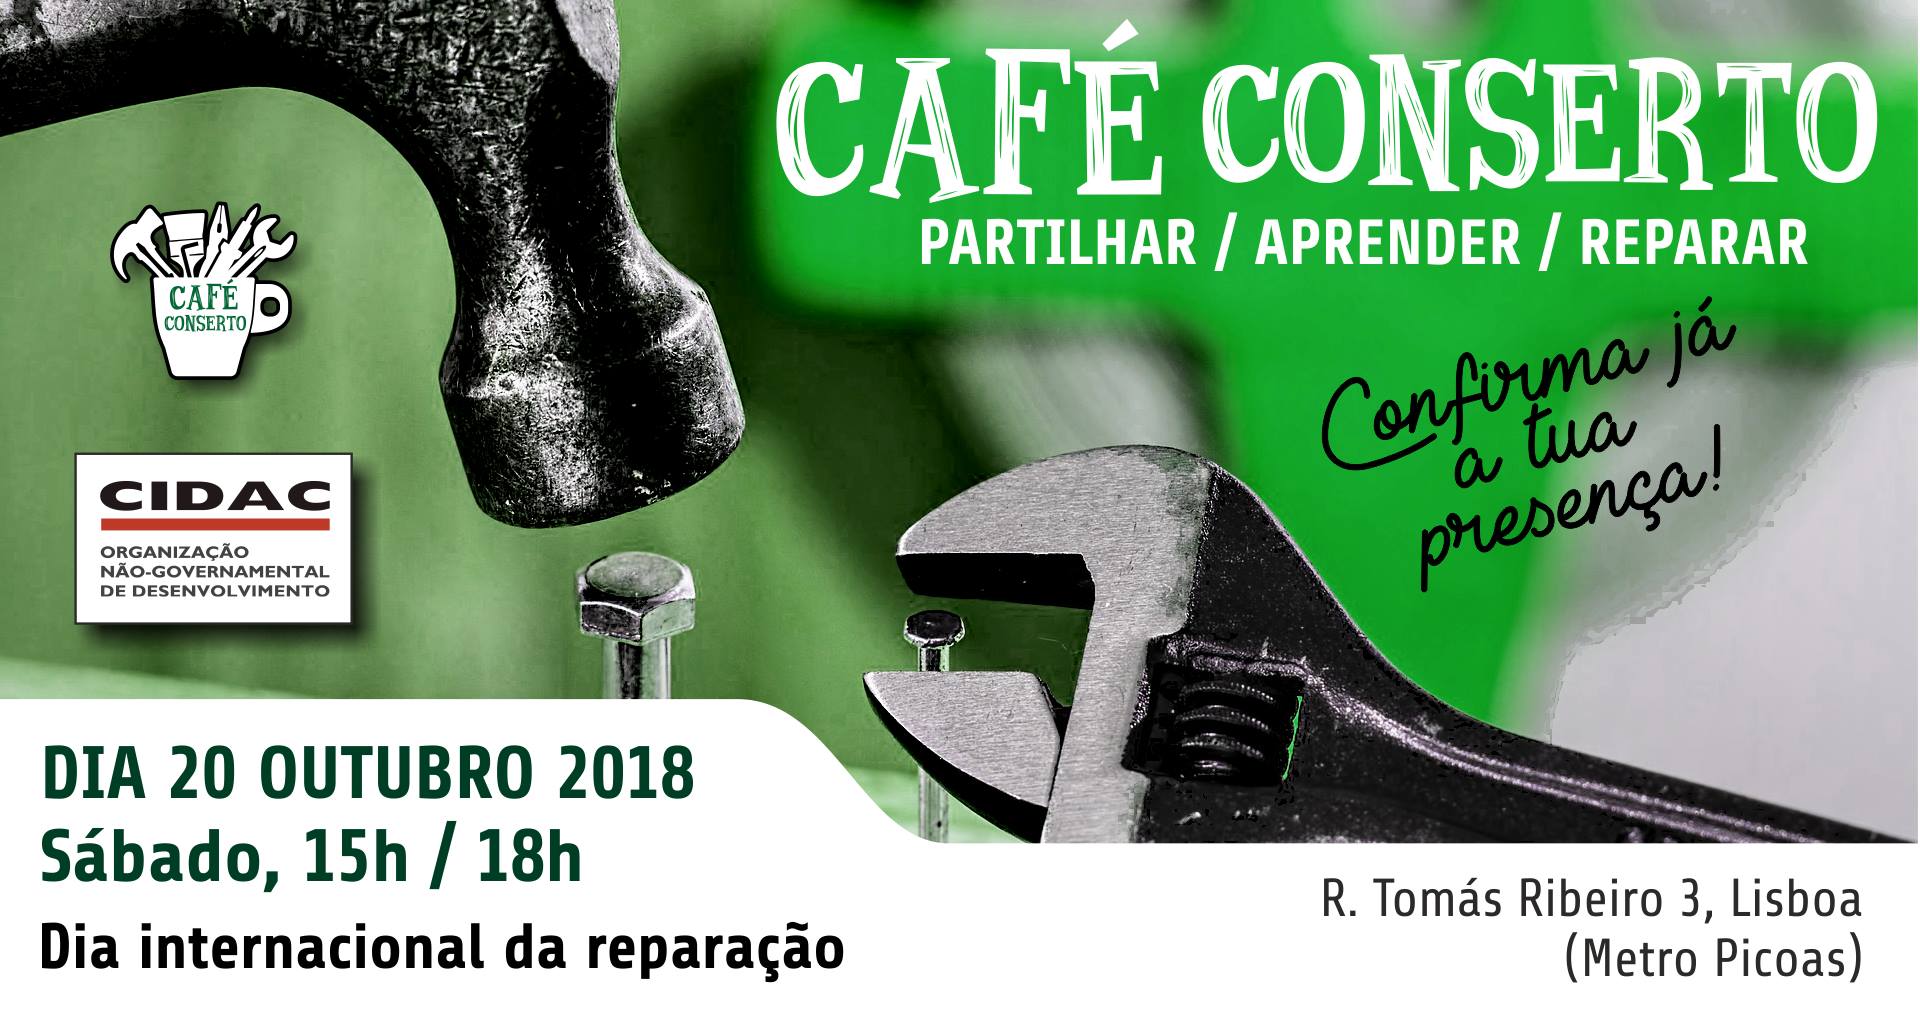 Café ConSerto no CIDAC em Lisboa